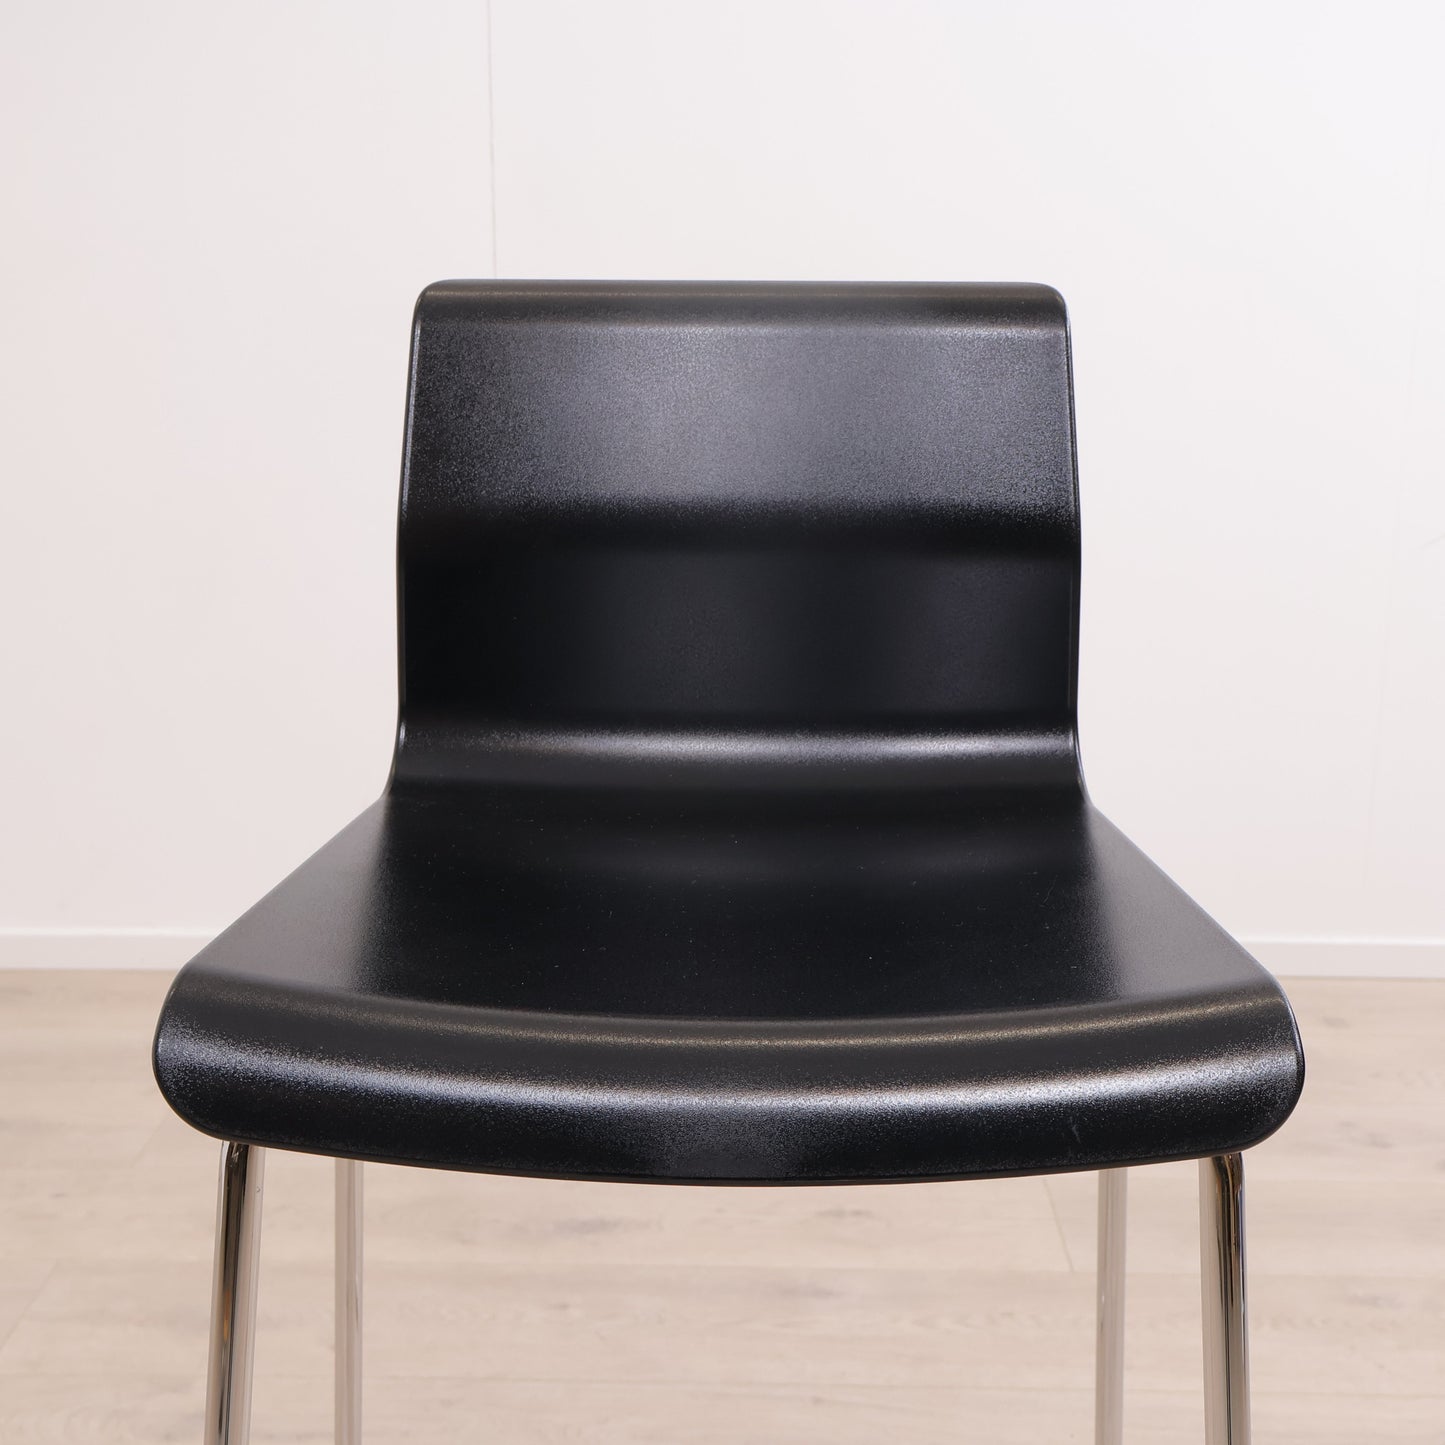 IKEA GLENN barstol i fargen svart